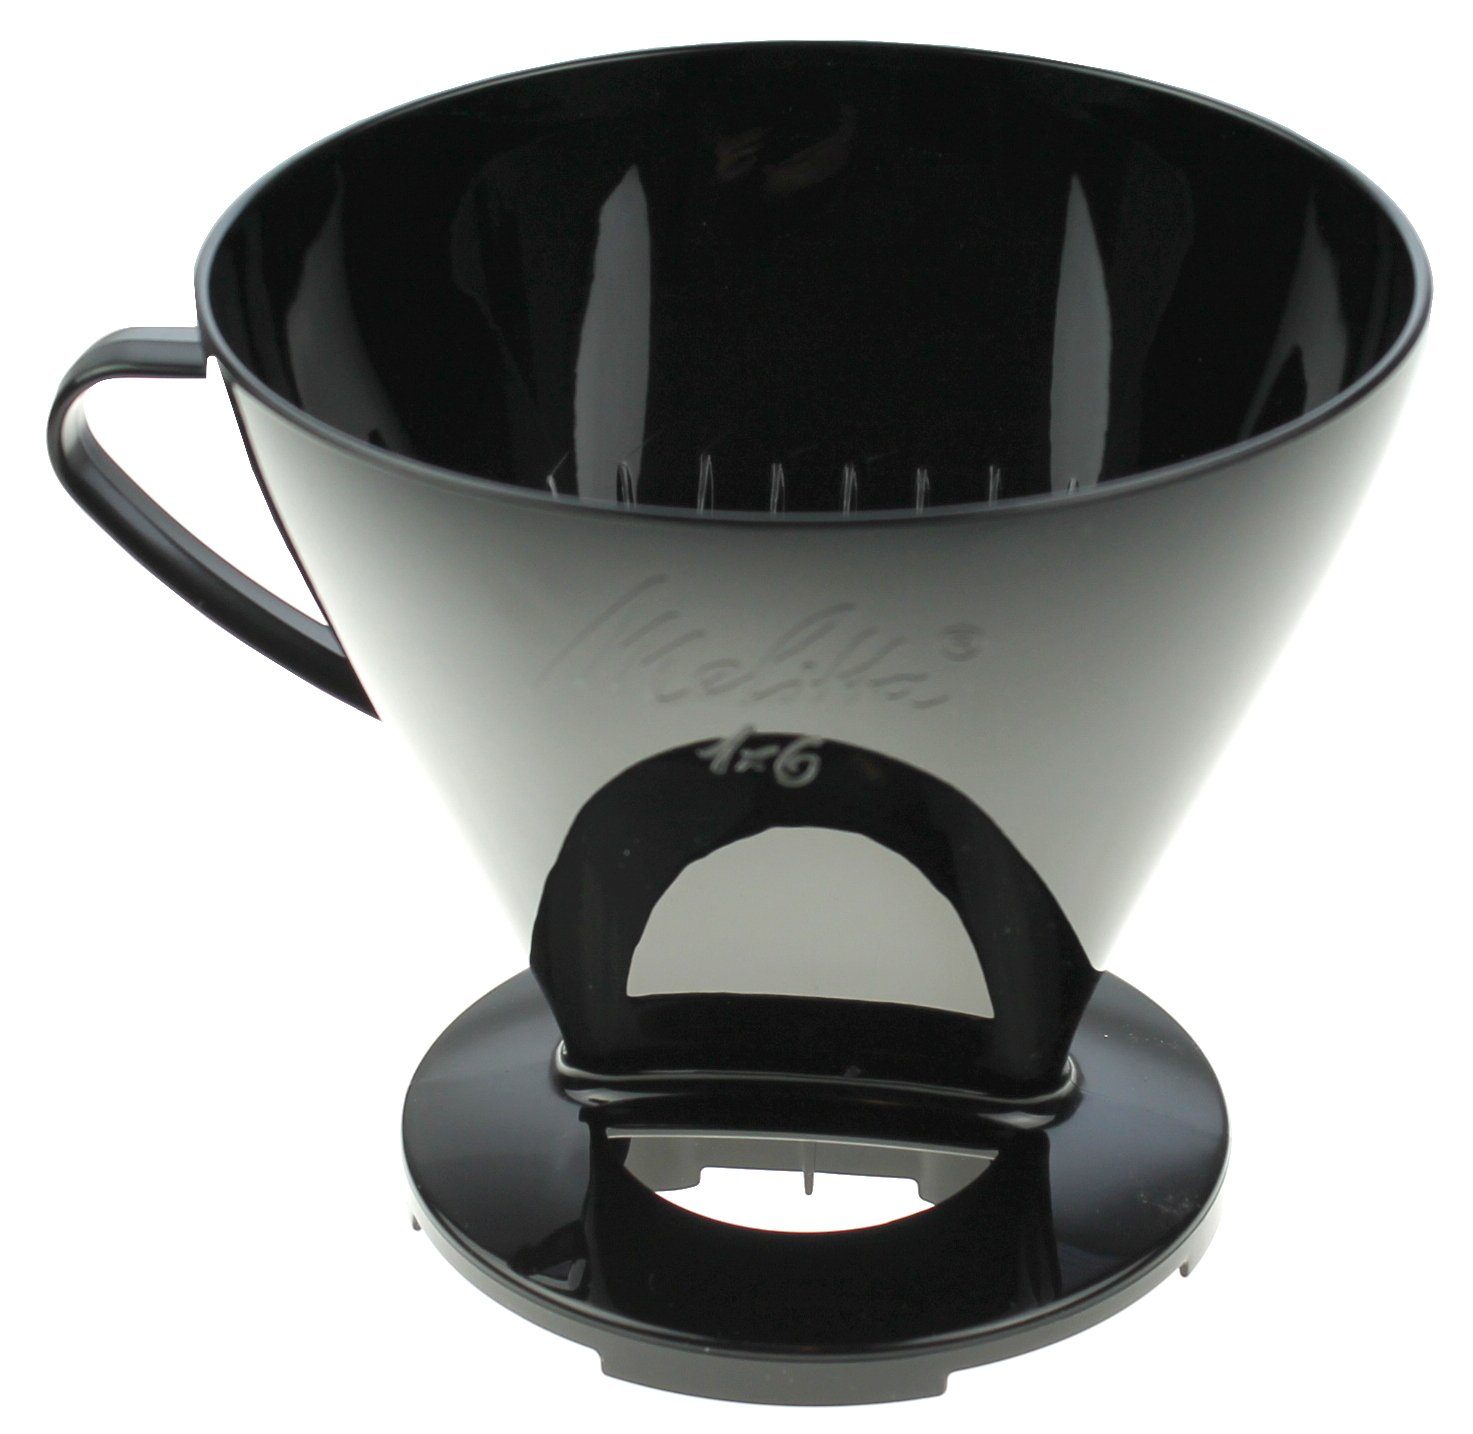 zur 6761019 Melitta Kaffeefilter Filterkaffeemaschine Kaffeezubereitu schwarz Melitta manuellen 1x6